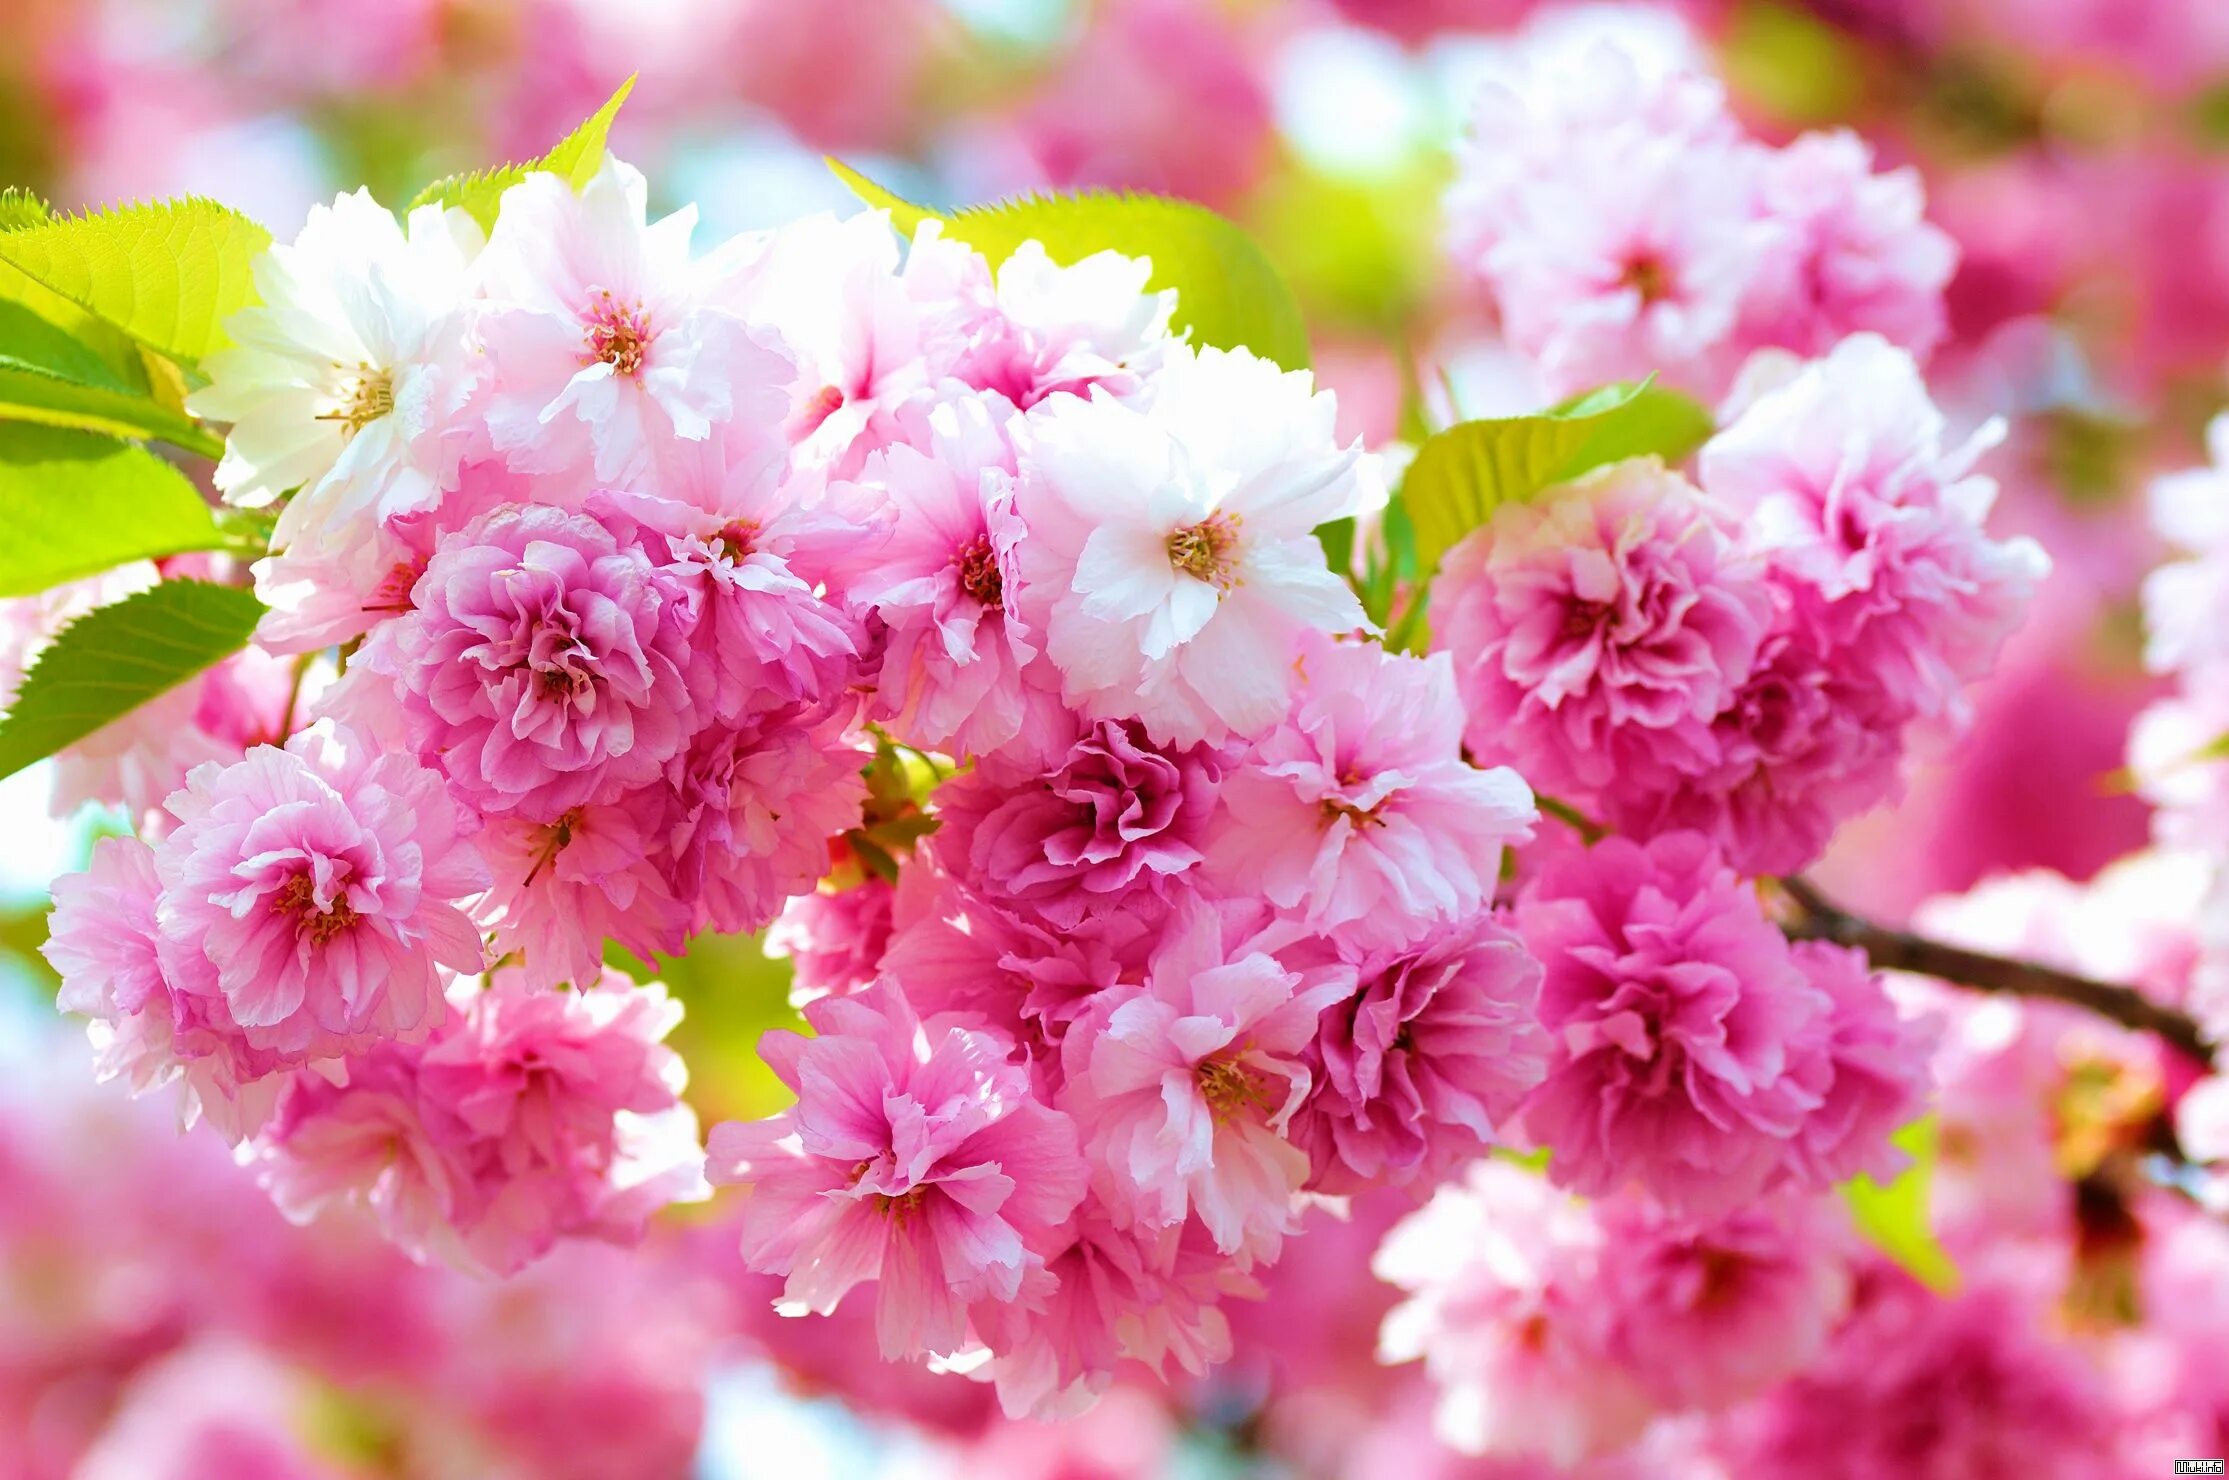 Бесплатные картинки на заставку компьютера. Весенние цветы. Красивые весенние цветы. Цветы Сакуры. Цветущая вишня.